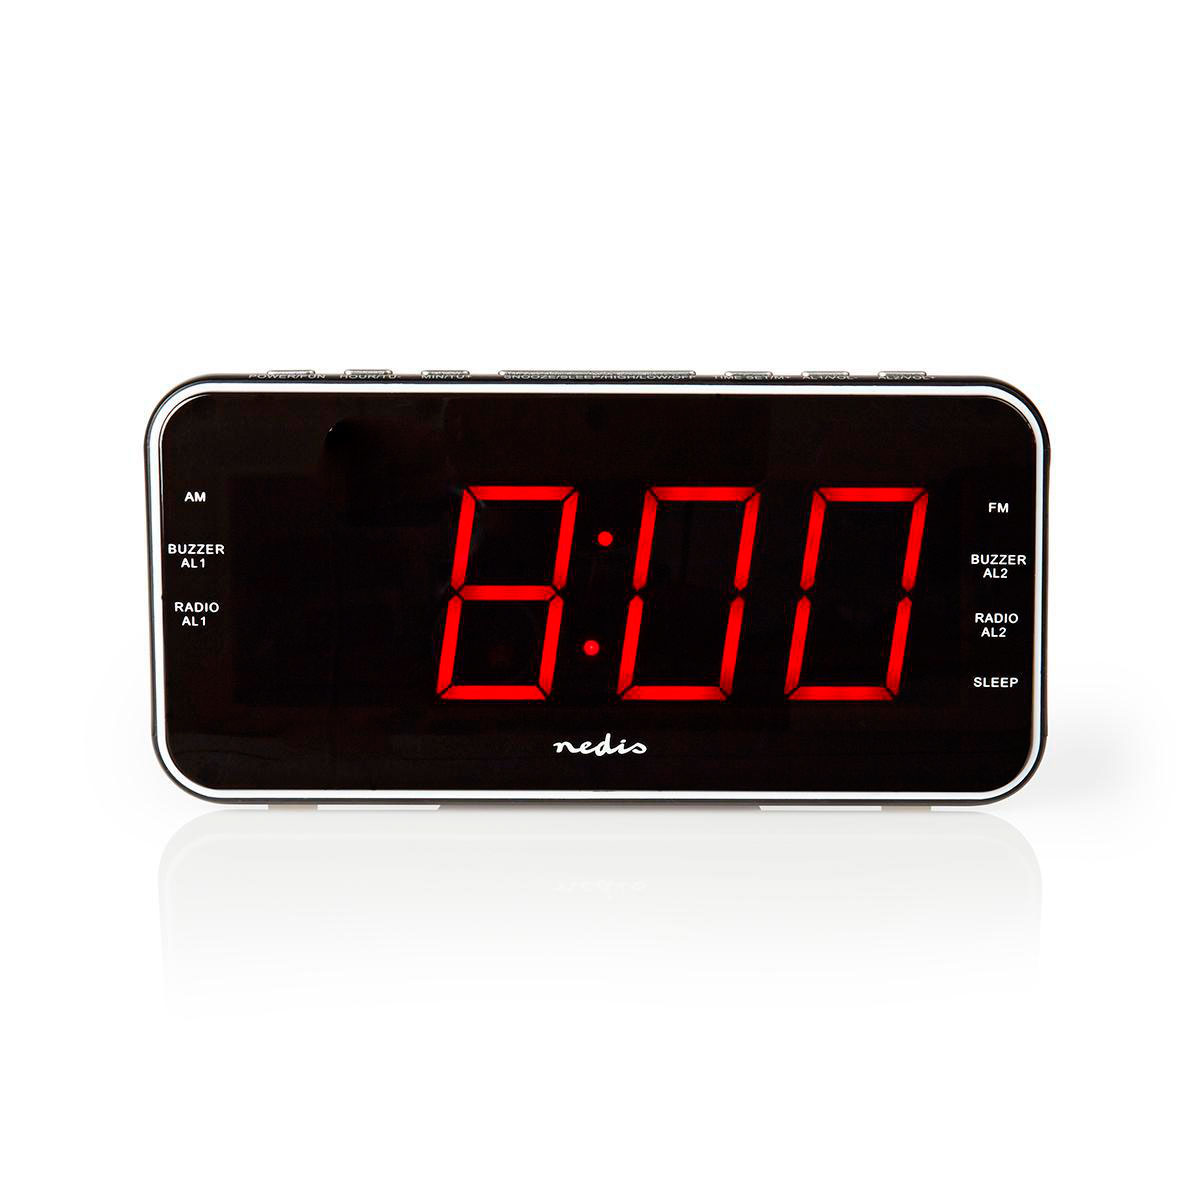 fordøjelse fordel anden Clockradio vækkeur (1,8tm rød LED) Sort - Køb Nedis vækkeur